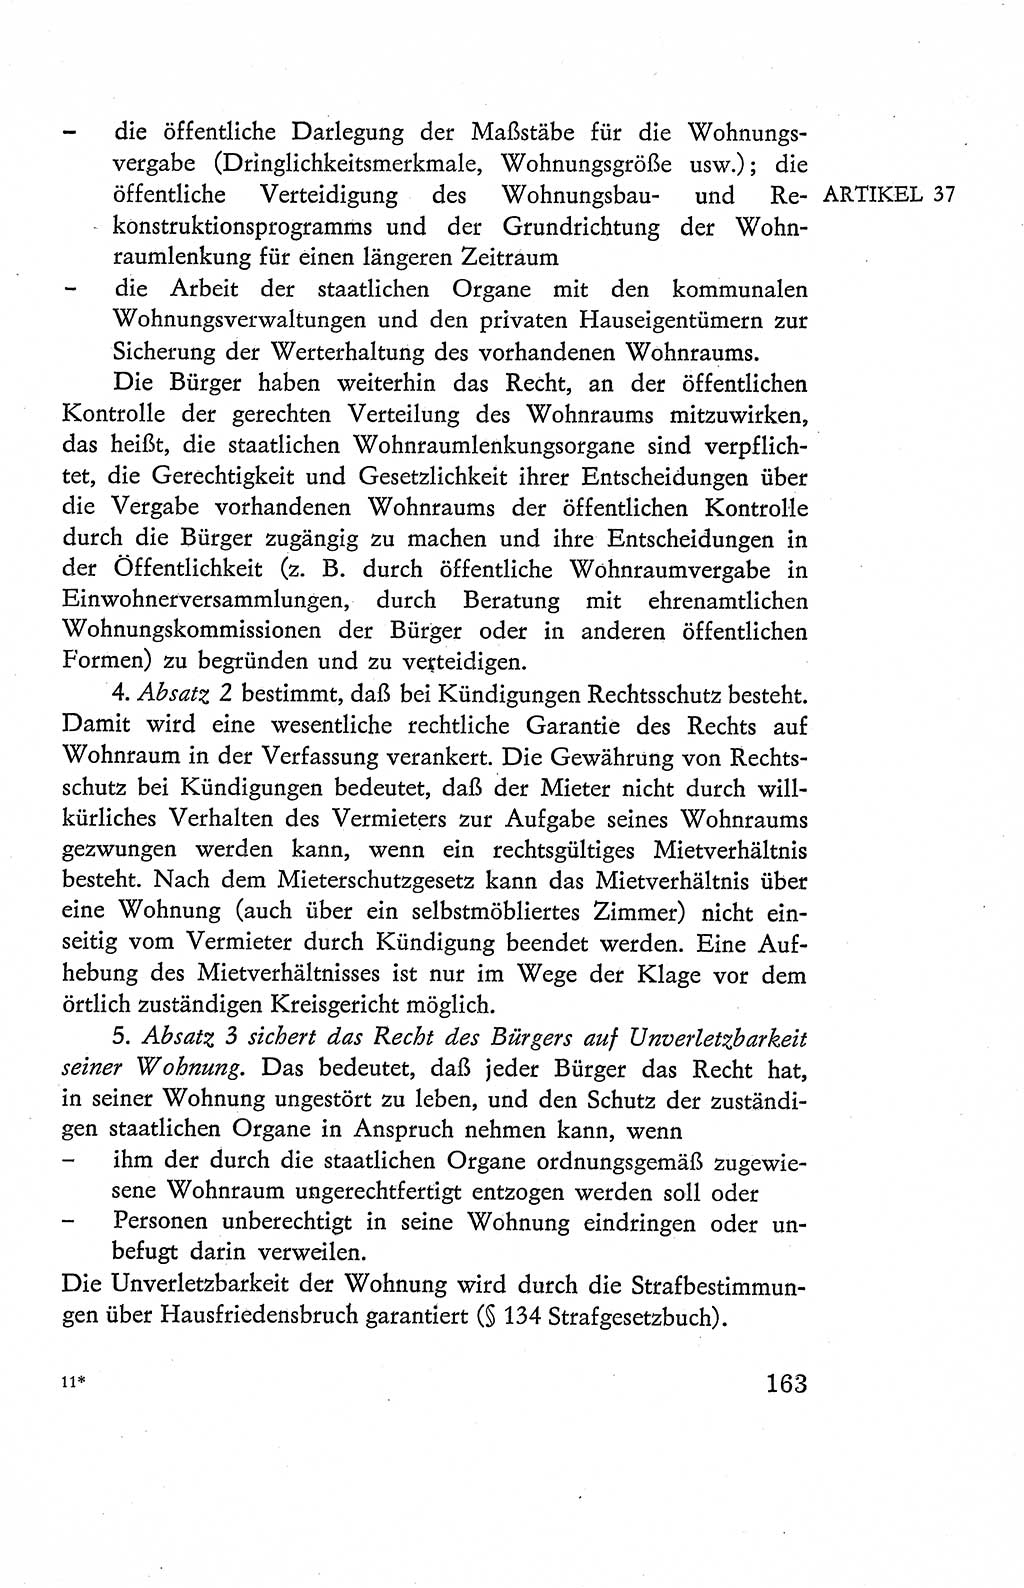 Verfassung der Deutschen Demokratischen Republik (DDR), Dokumente, Kommentar 1969, Band 2, Seite 163 (Verf. DDR Dok. Komm. 1969, Bd. 2, S. 163)